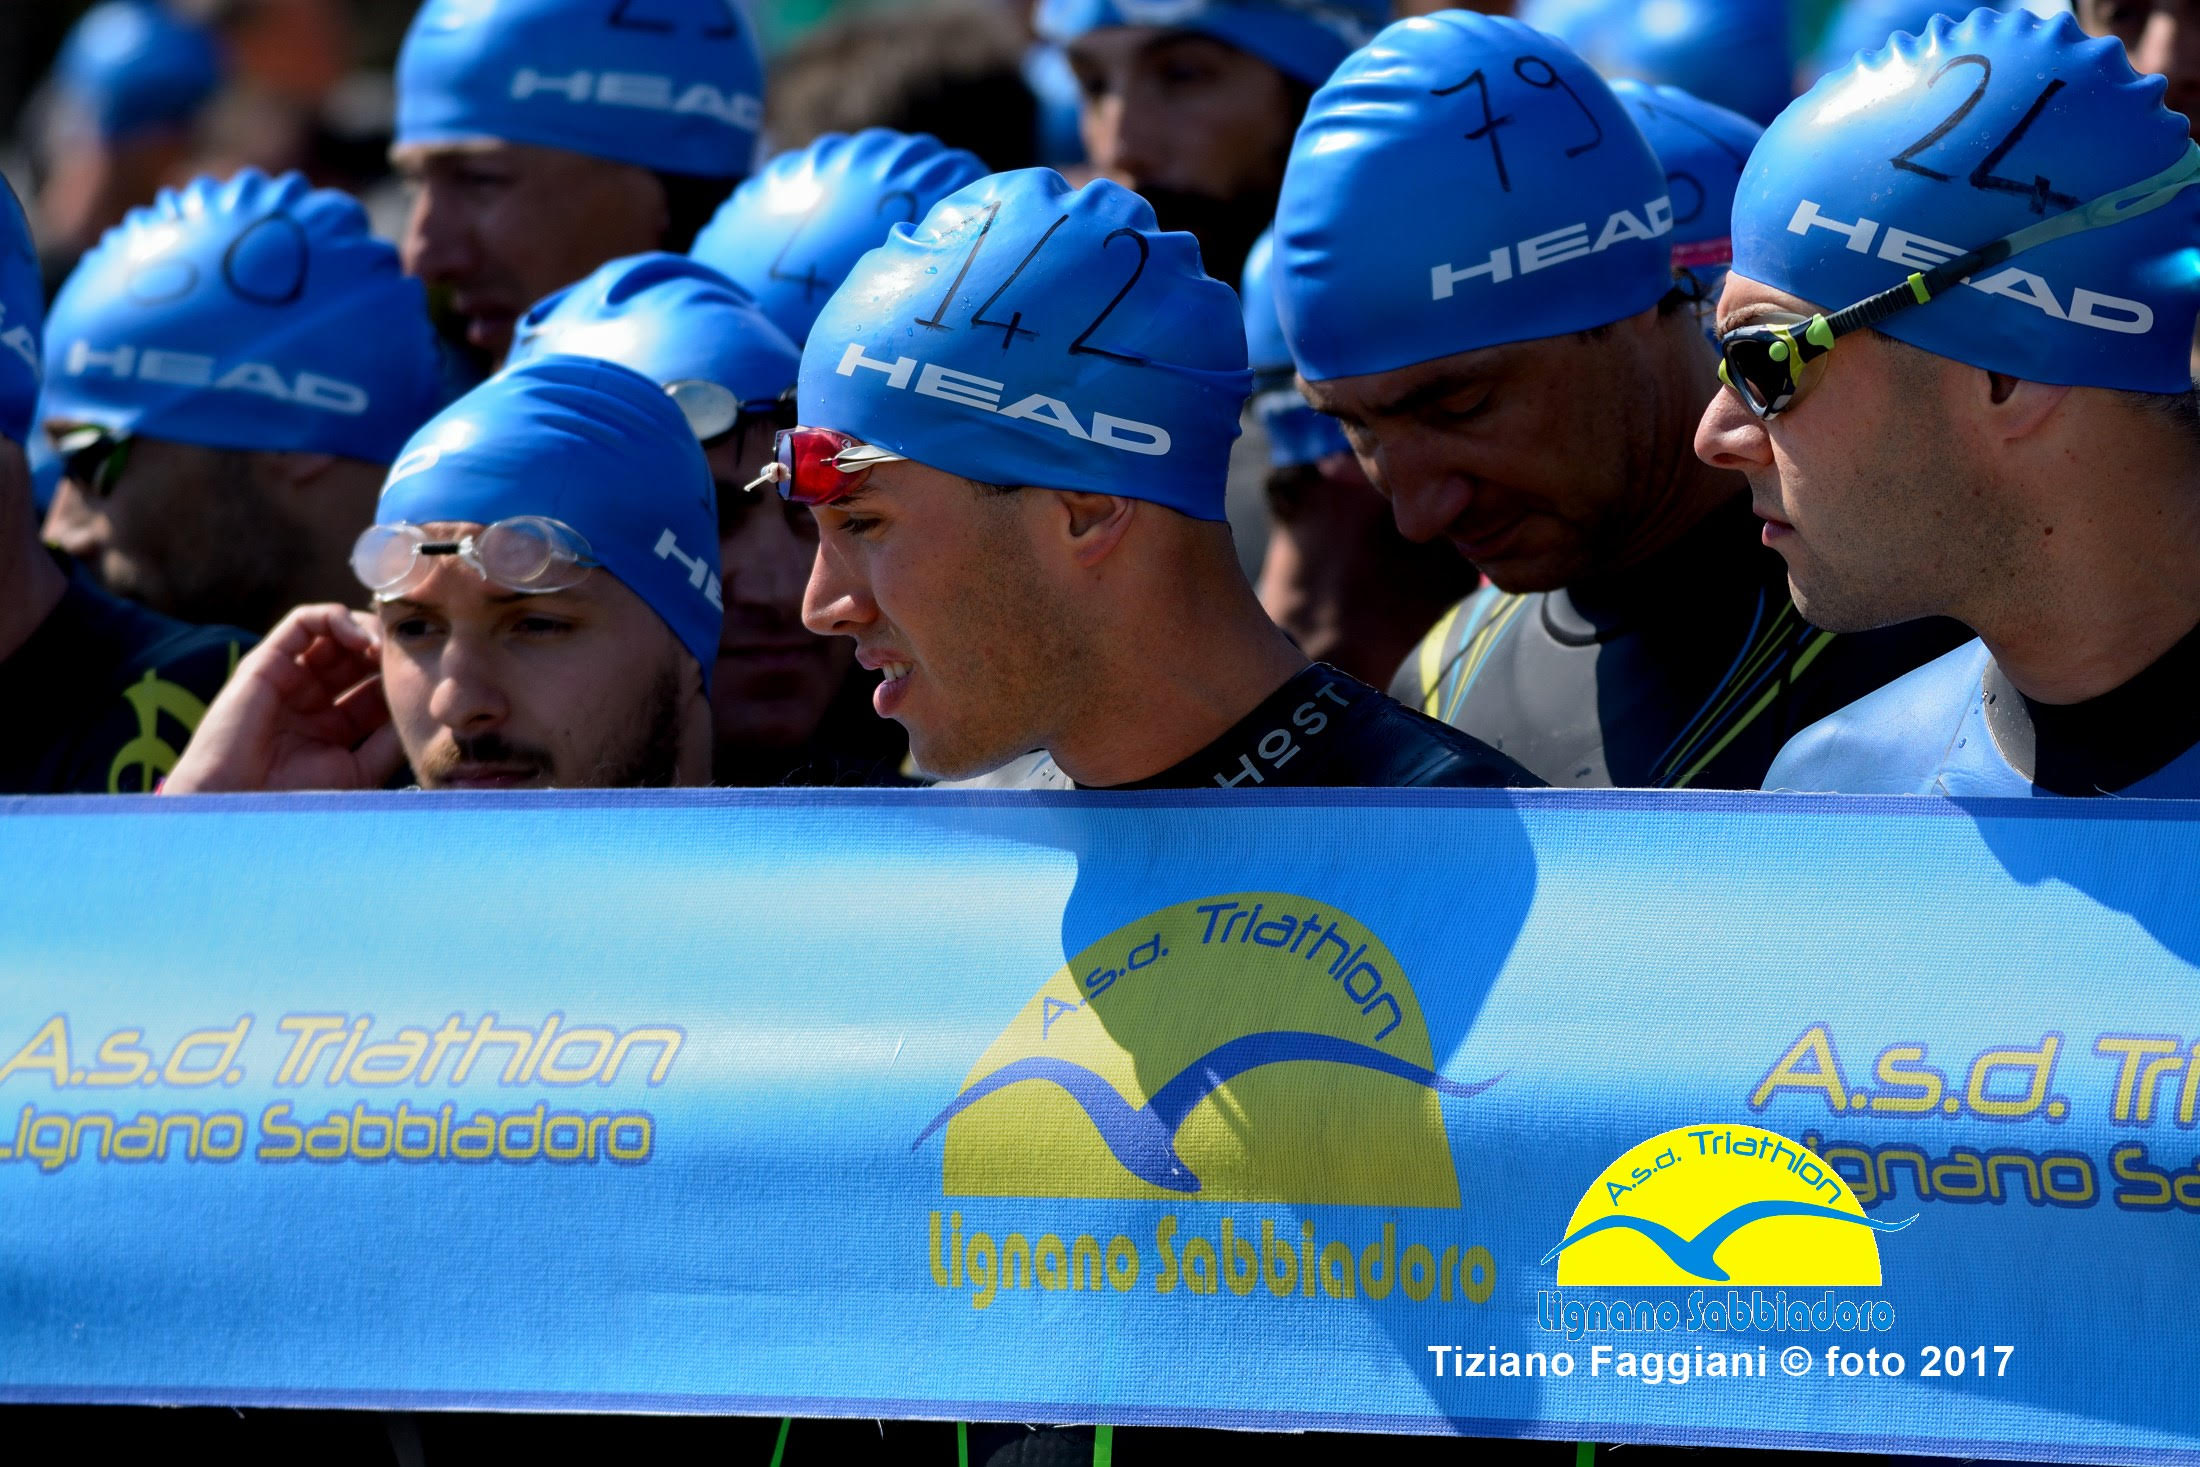 3° Triathlon Città di Lignano Sabbiadoro aperte le iscrizioni: prezzo agevolato fino al 15 febbraio